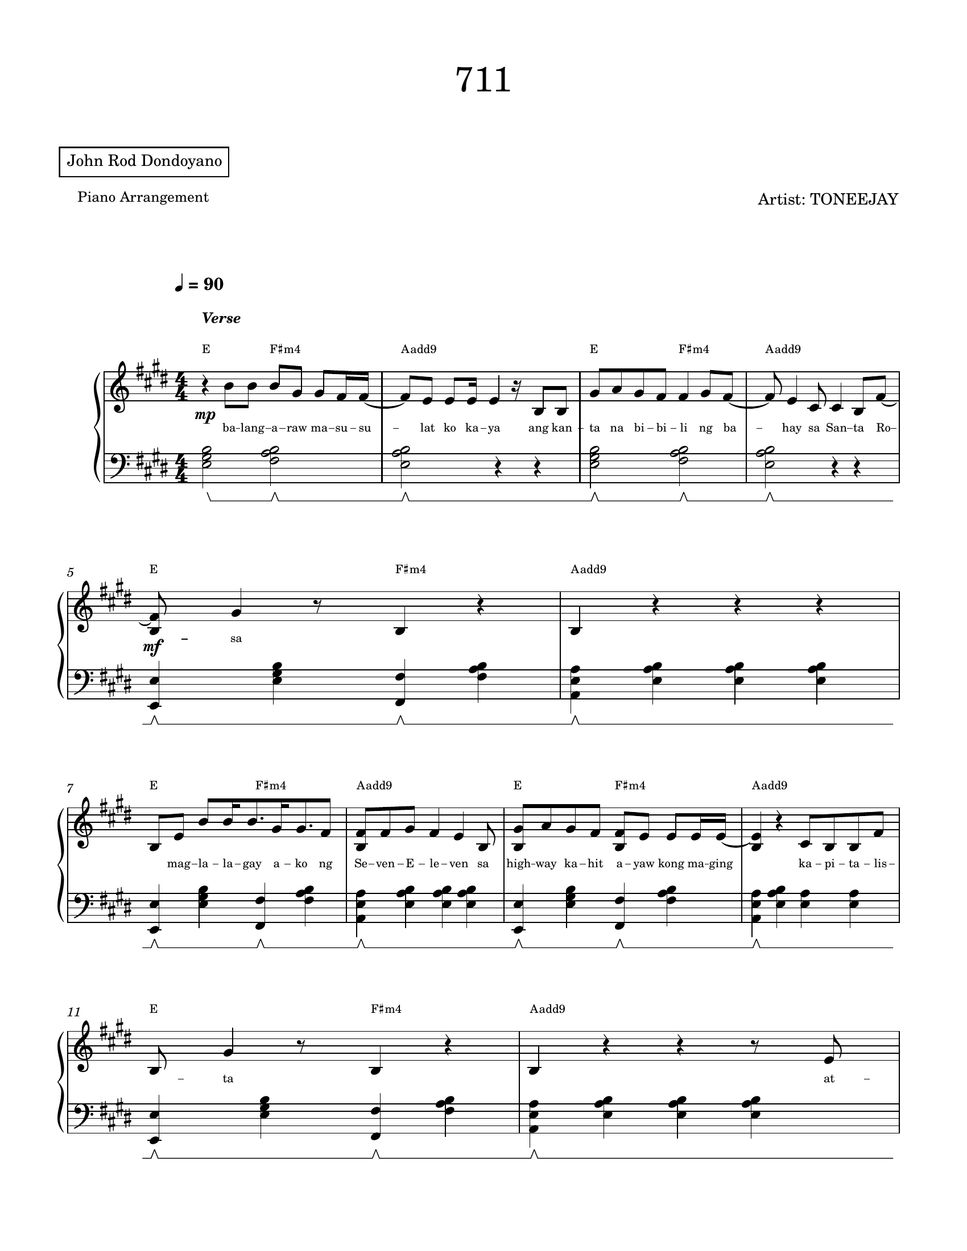 TONEEJAY - 711 (PIANO SHEET) by John Rod Dondoyano